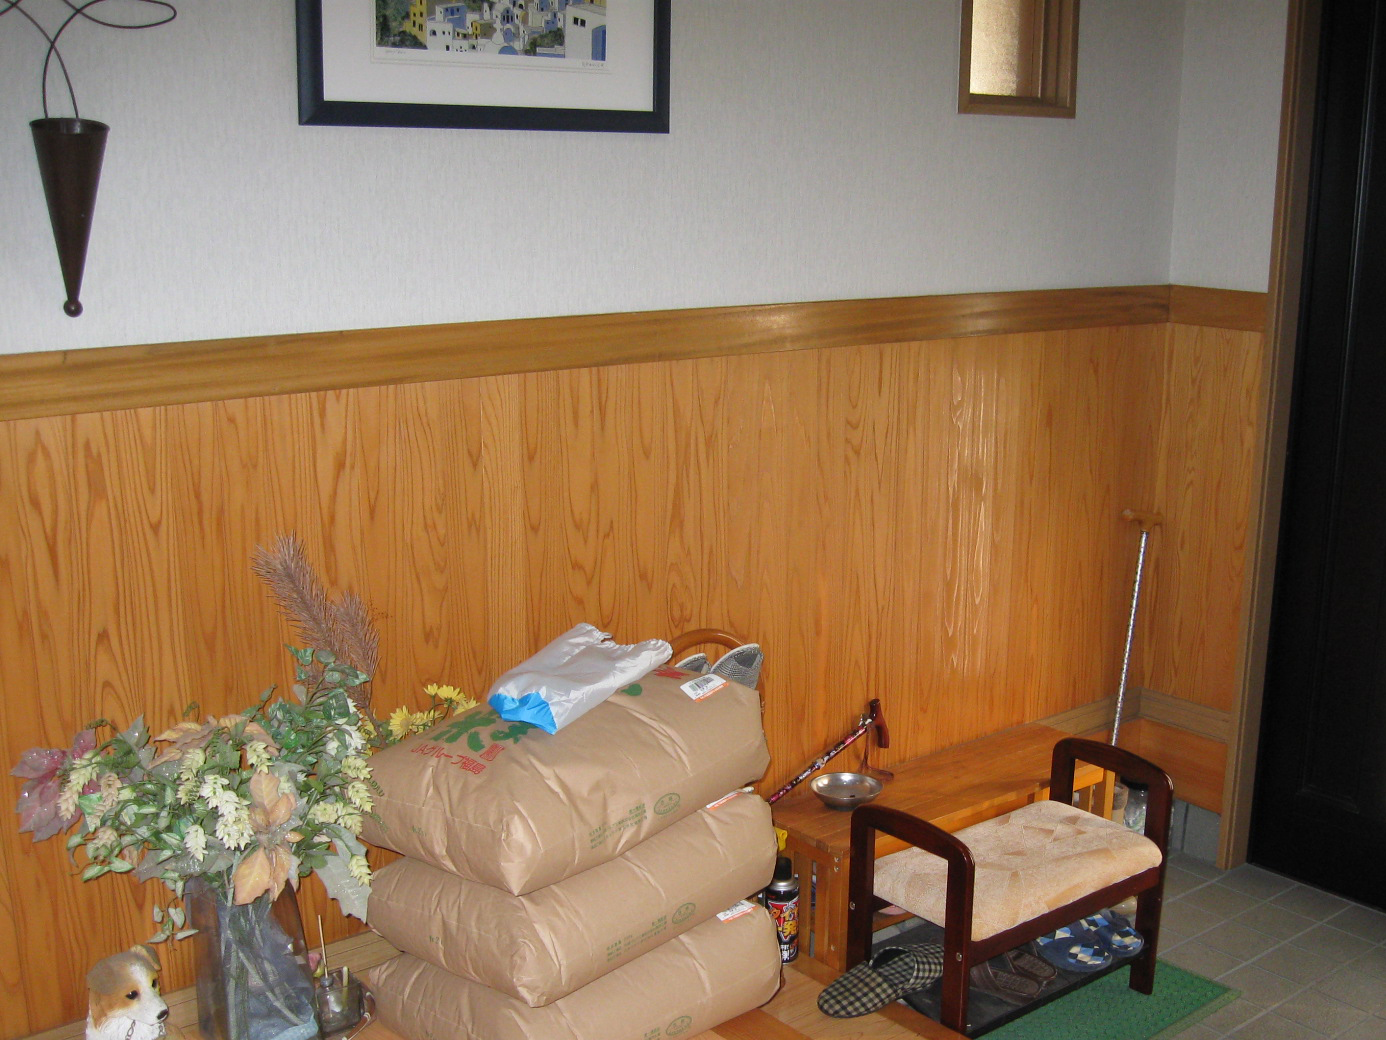 福島県耶麻郡猪苗代町の住宅で、手摺を設置したリフォーム事例